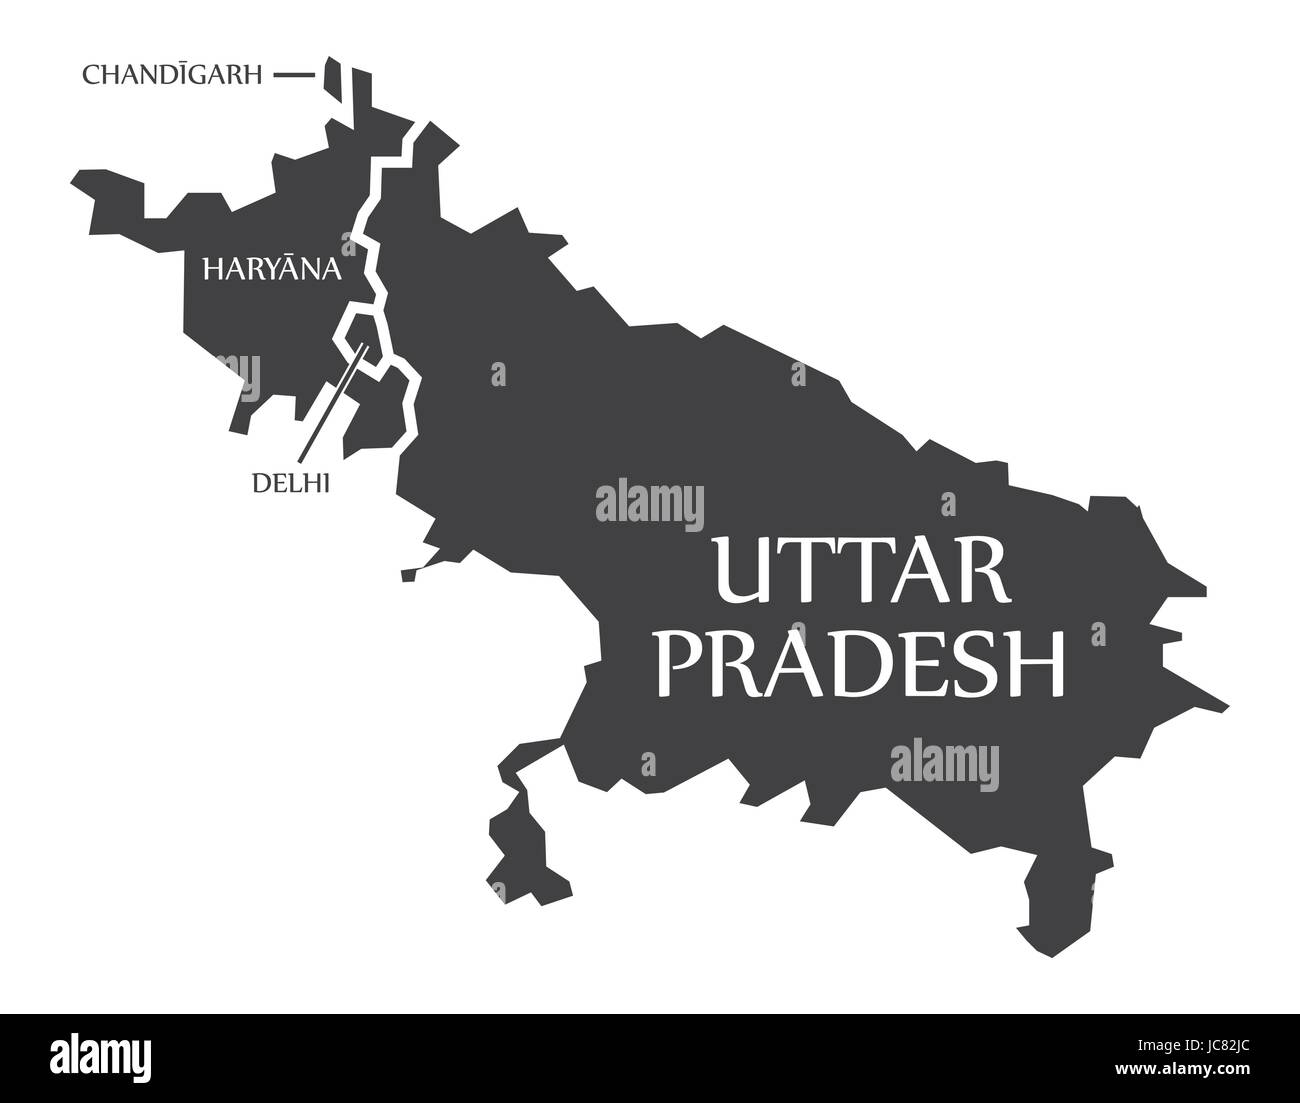 Chandigarh - Staaten Haryana - Delhi - Uttar Pradesh Karte Illustration of Indian Stock Vektor